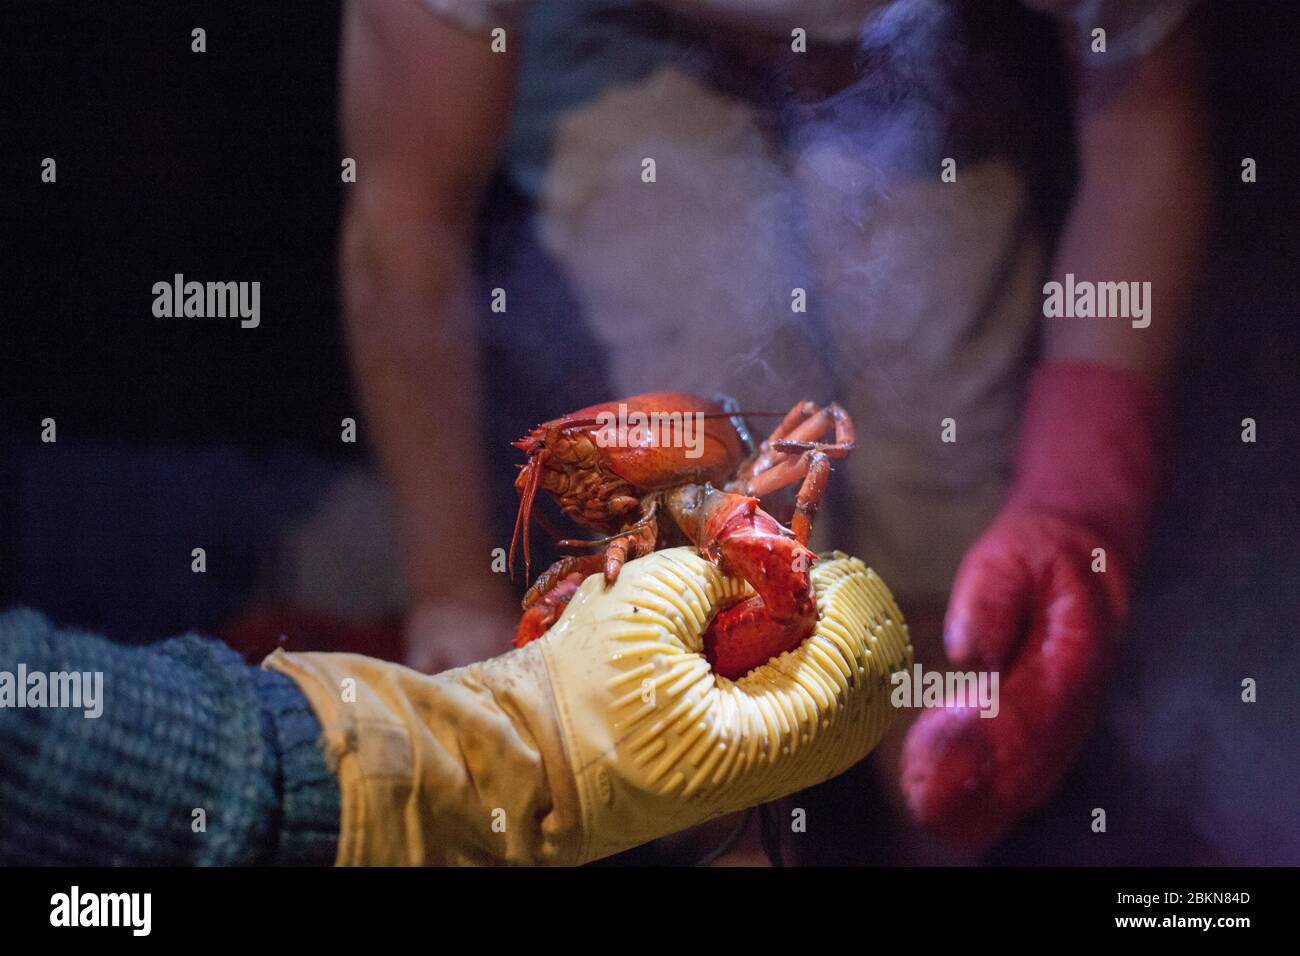 Un uomo tiene un'aragosta appena cotta in un forno di gomma, come il vapore sale dall'aragosta e un'altra persona attende con un mitt vicino, Maine, Stati Uniti Foto Stock